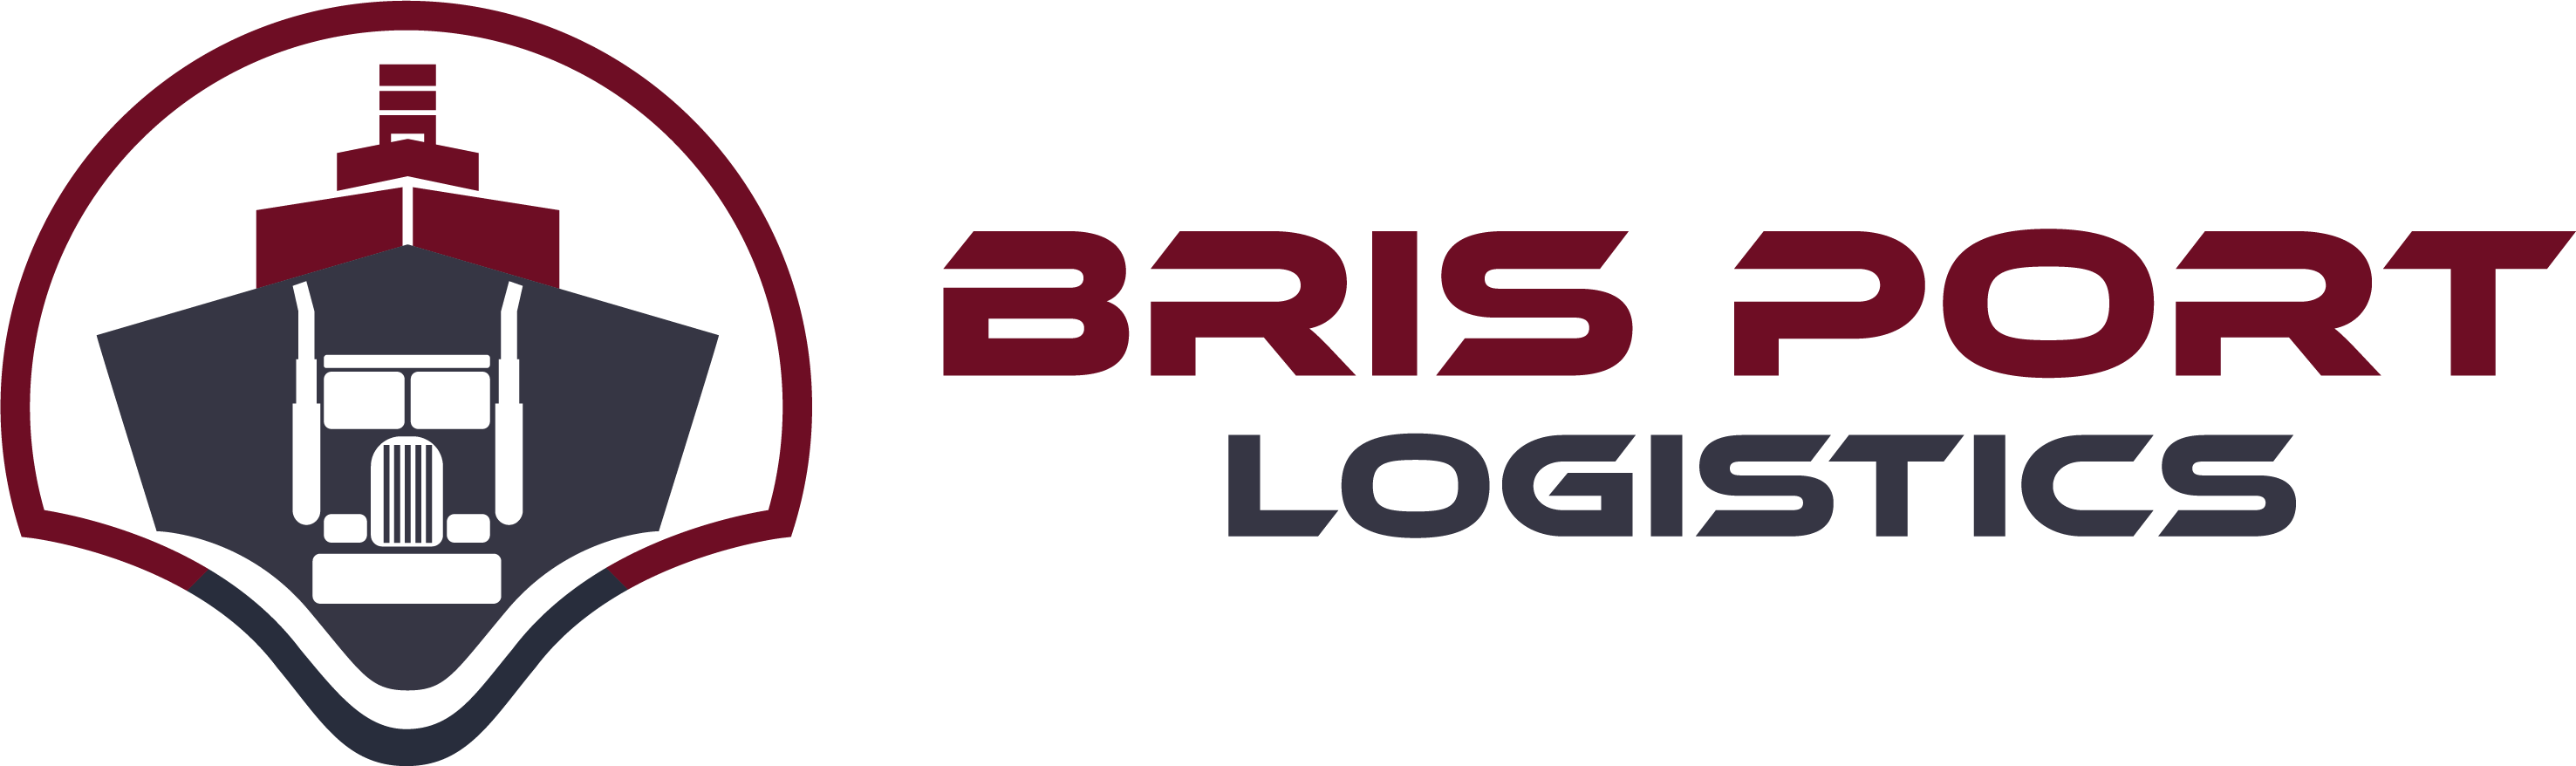 Bris Port Logistics